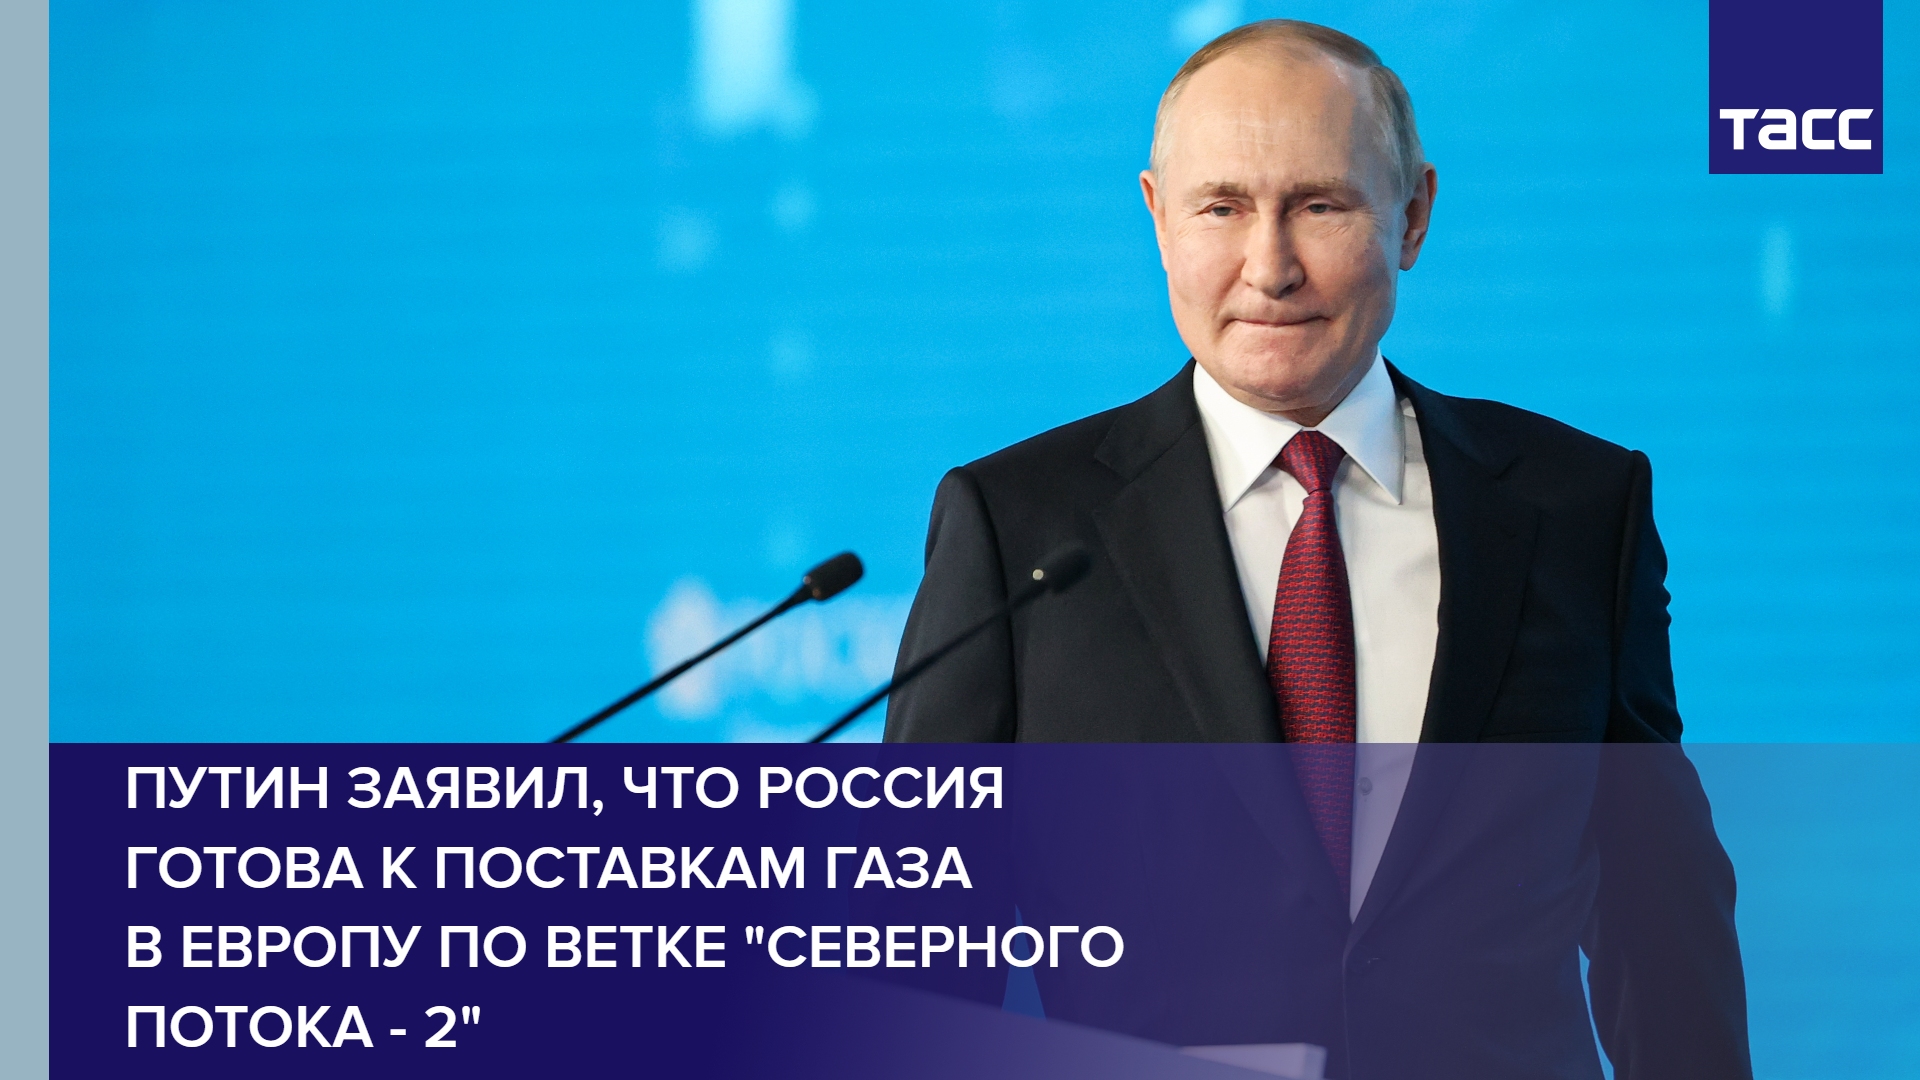 Путин заявил, что Россия готова к поставкам газа в Европу по ветке "Северного потока - 2" #shorts